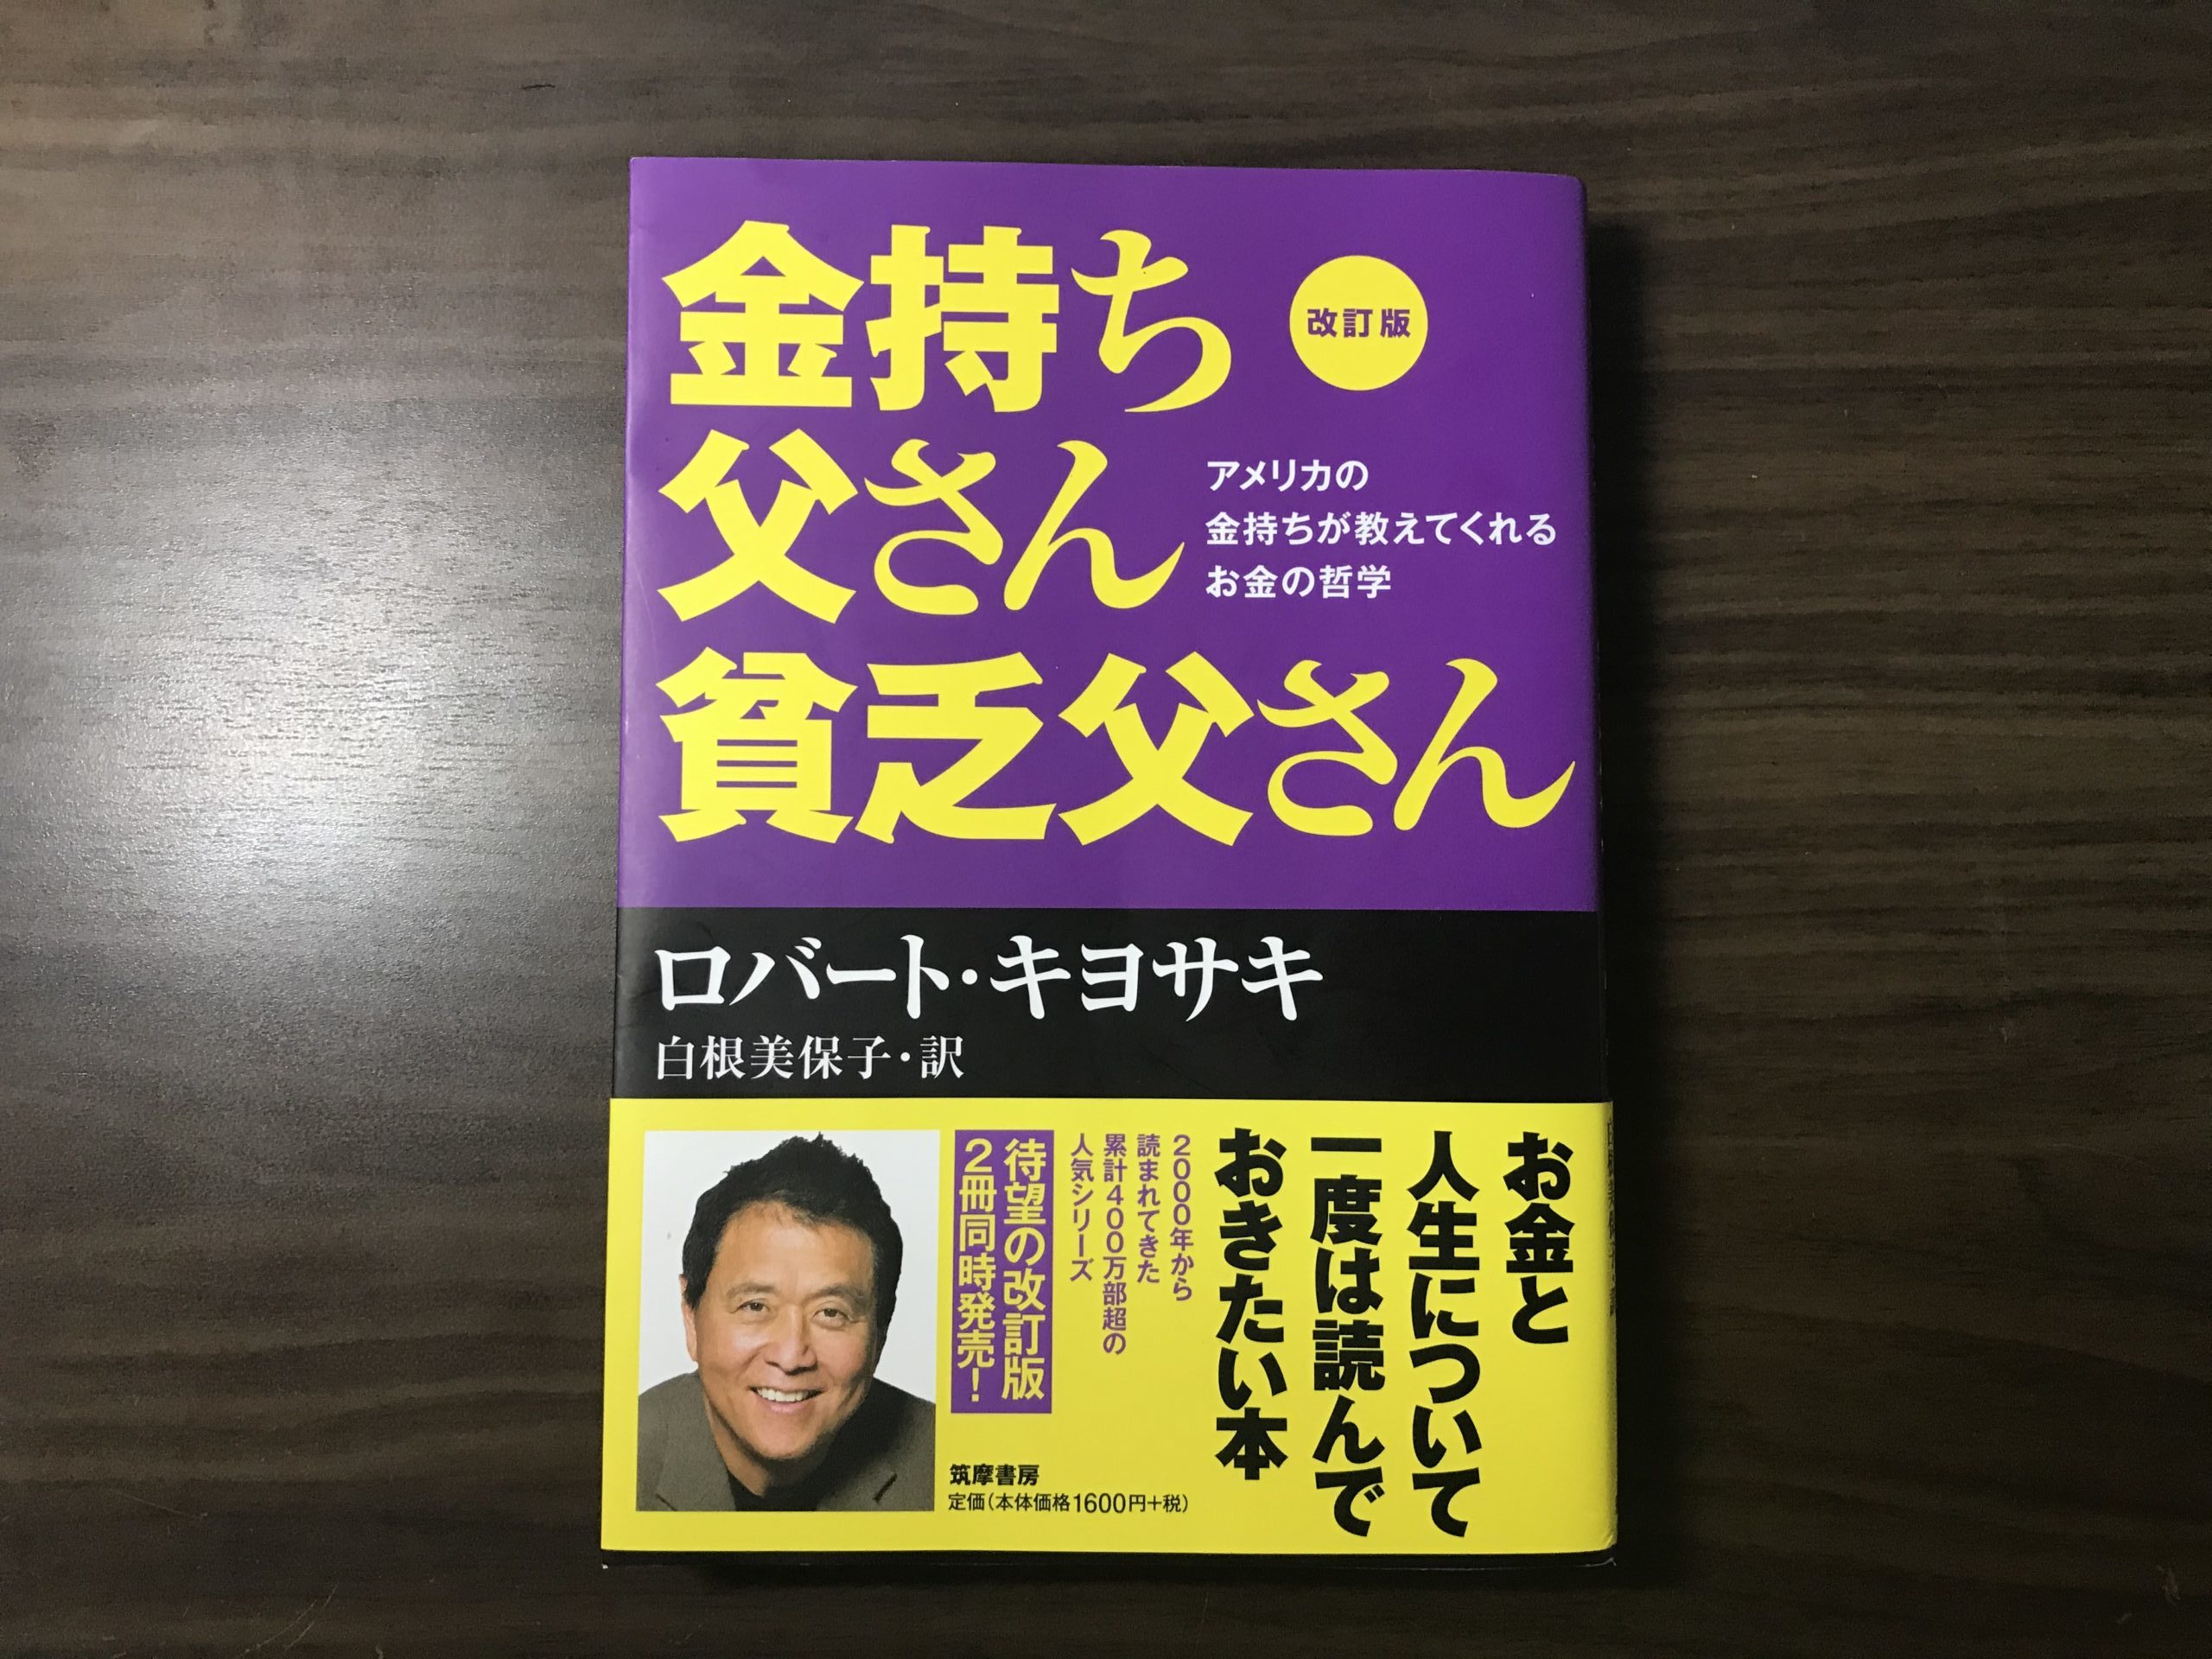 入荷中 ロバートキヨサキさん関連の書籍18冊 gokuburger.fr